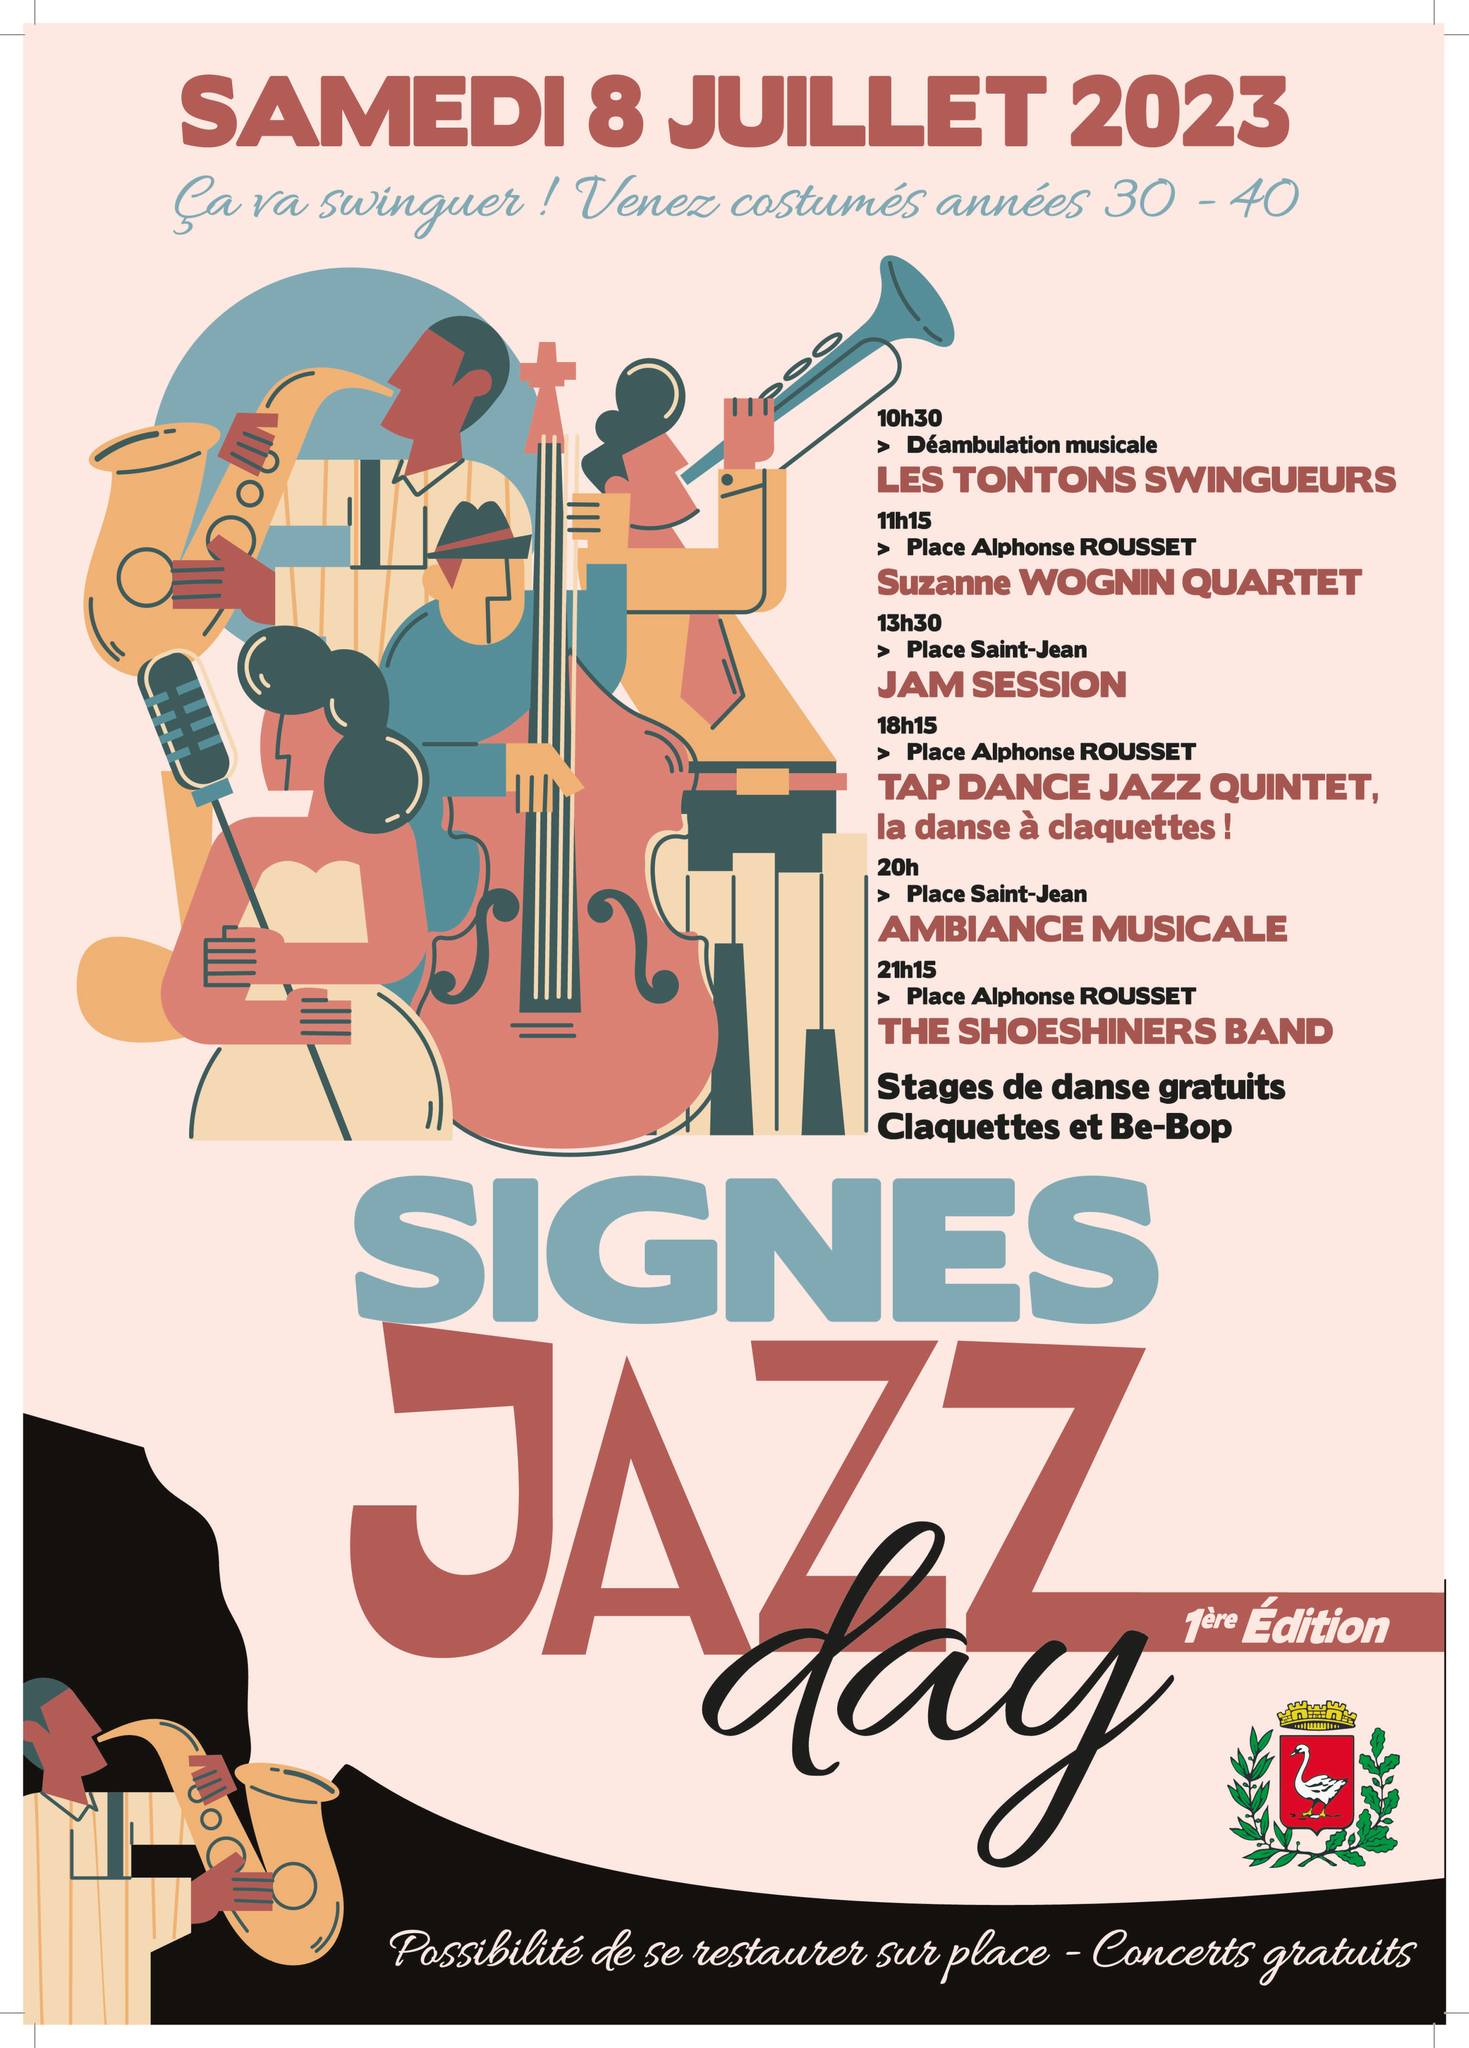 Signes jazz day 080723 